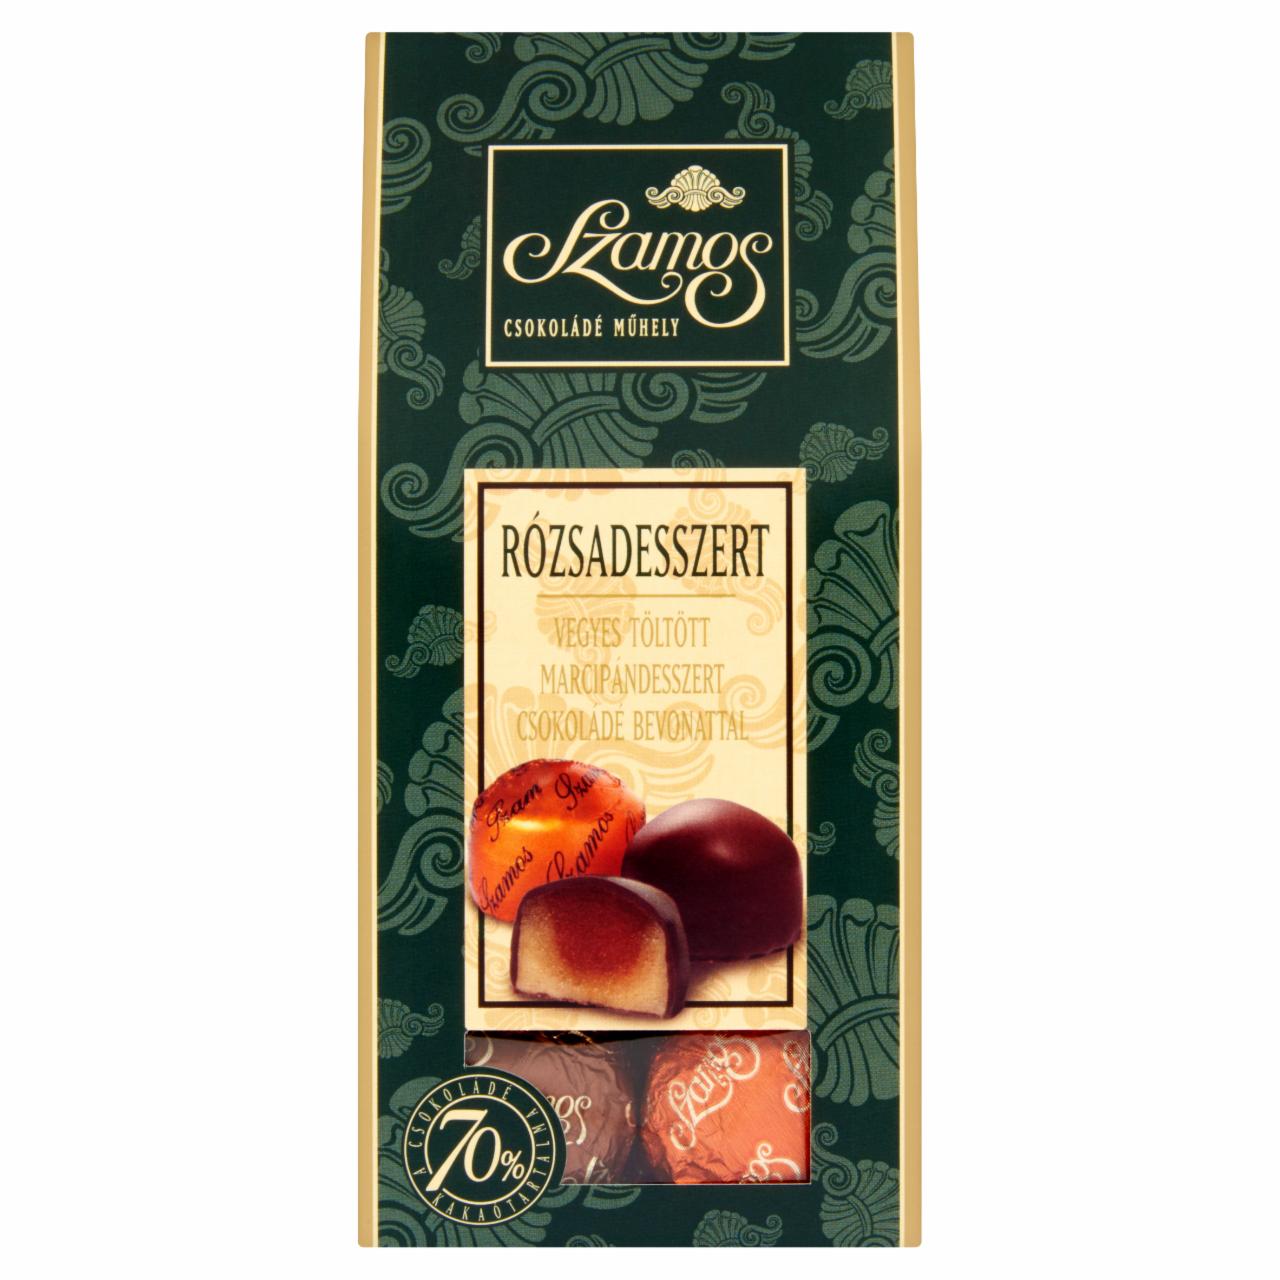 Képek - Szamos Rózsadesszert vegyes töltött marcipándesszert csokoládé bevonattal 7 db 125 g